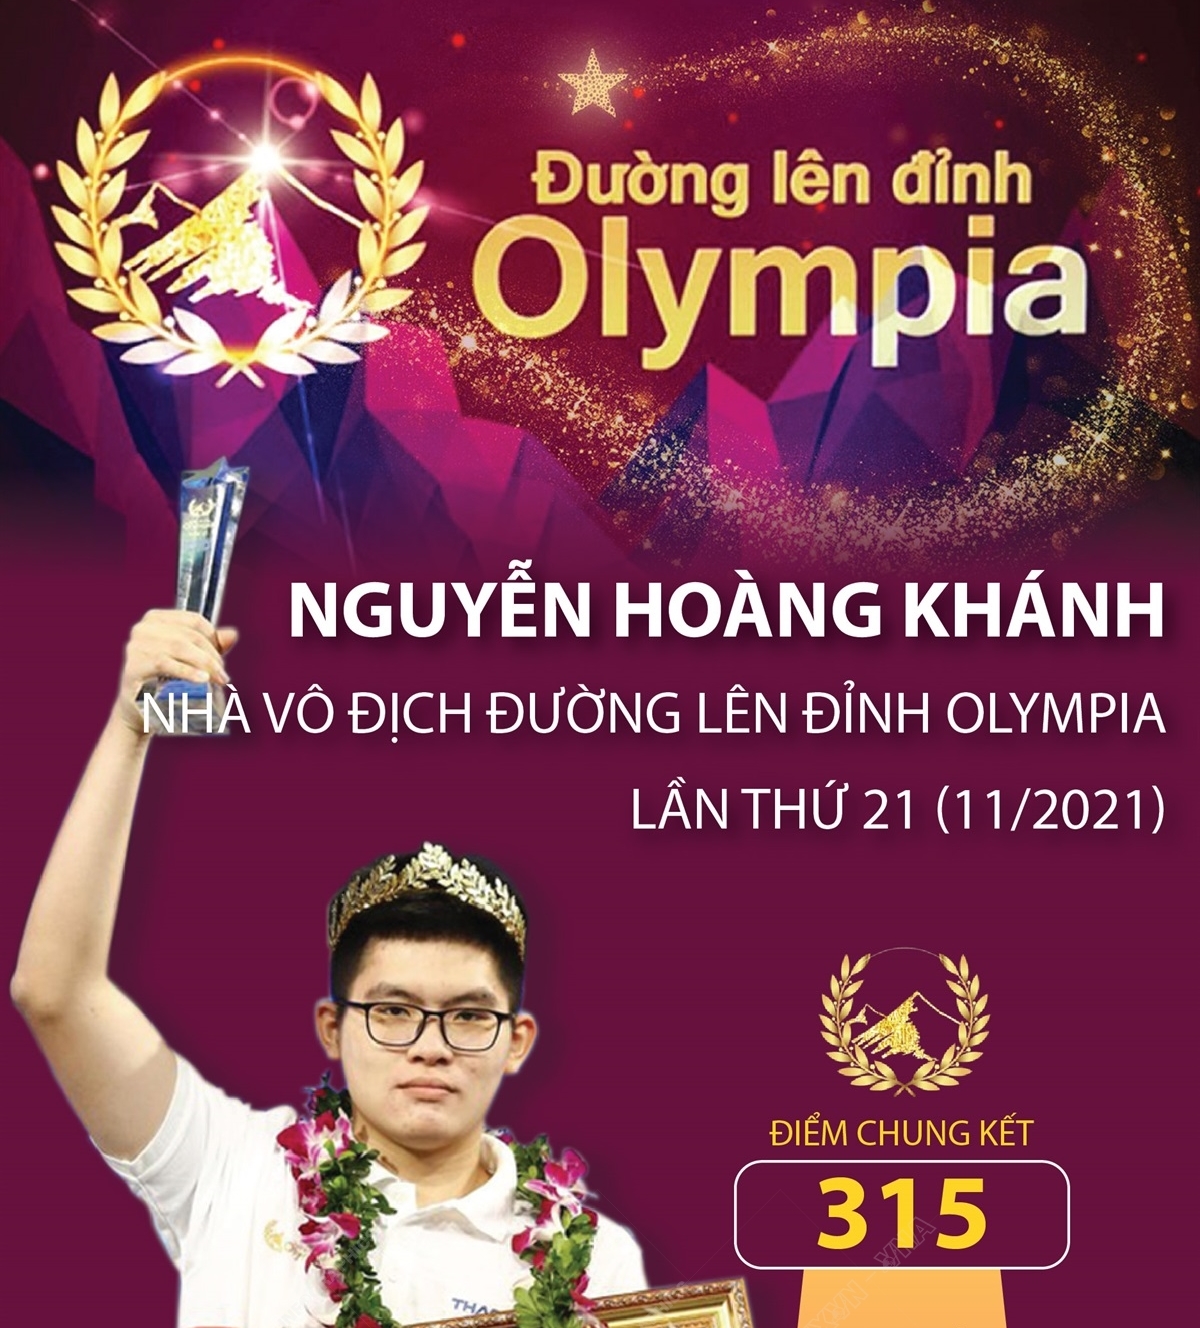 Chân dung nhà vô địch Đường lên đỉnh Olympia lần thứ 21 Nguyễn Hoàng Khánh